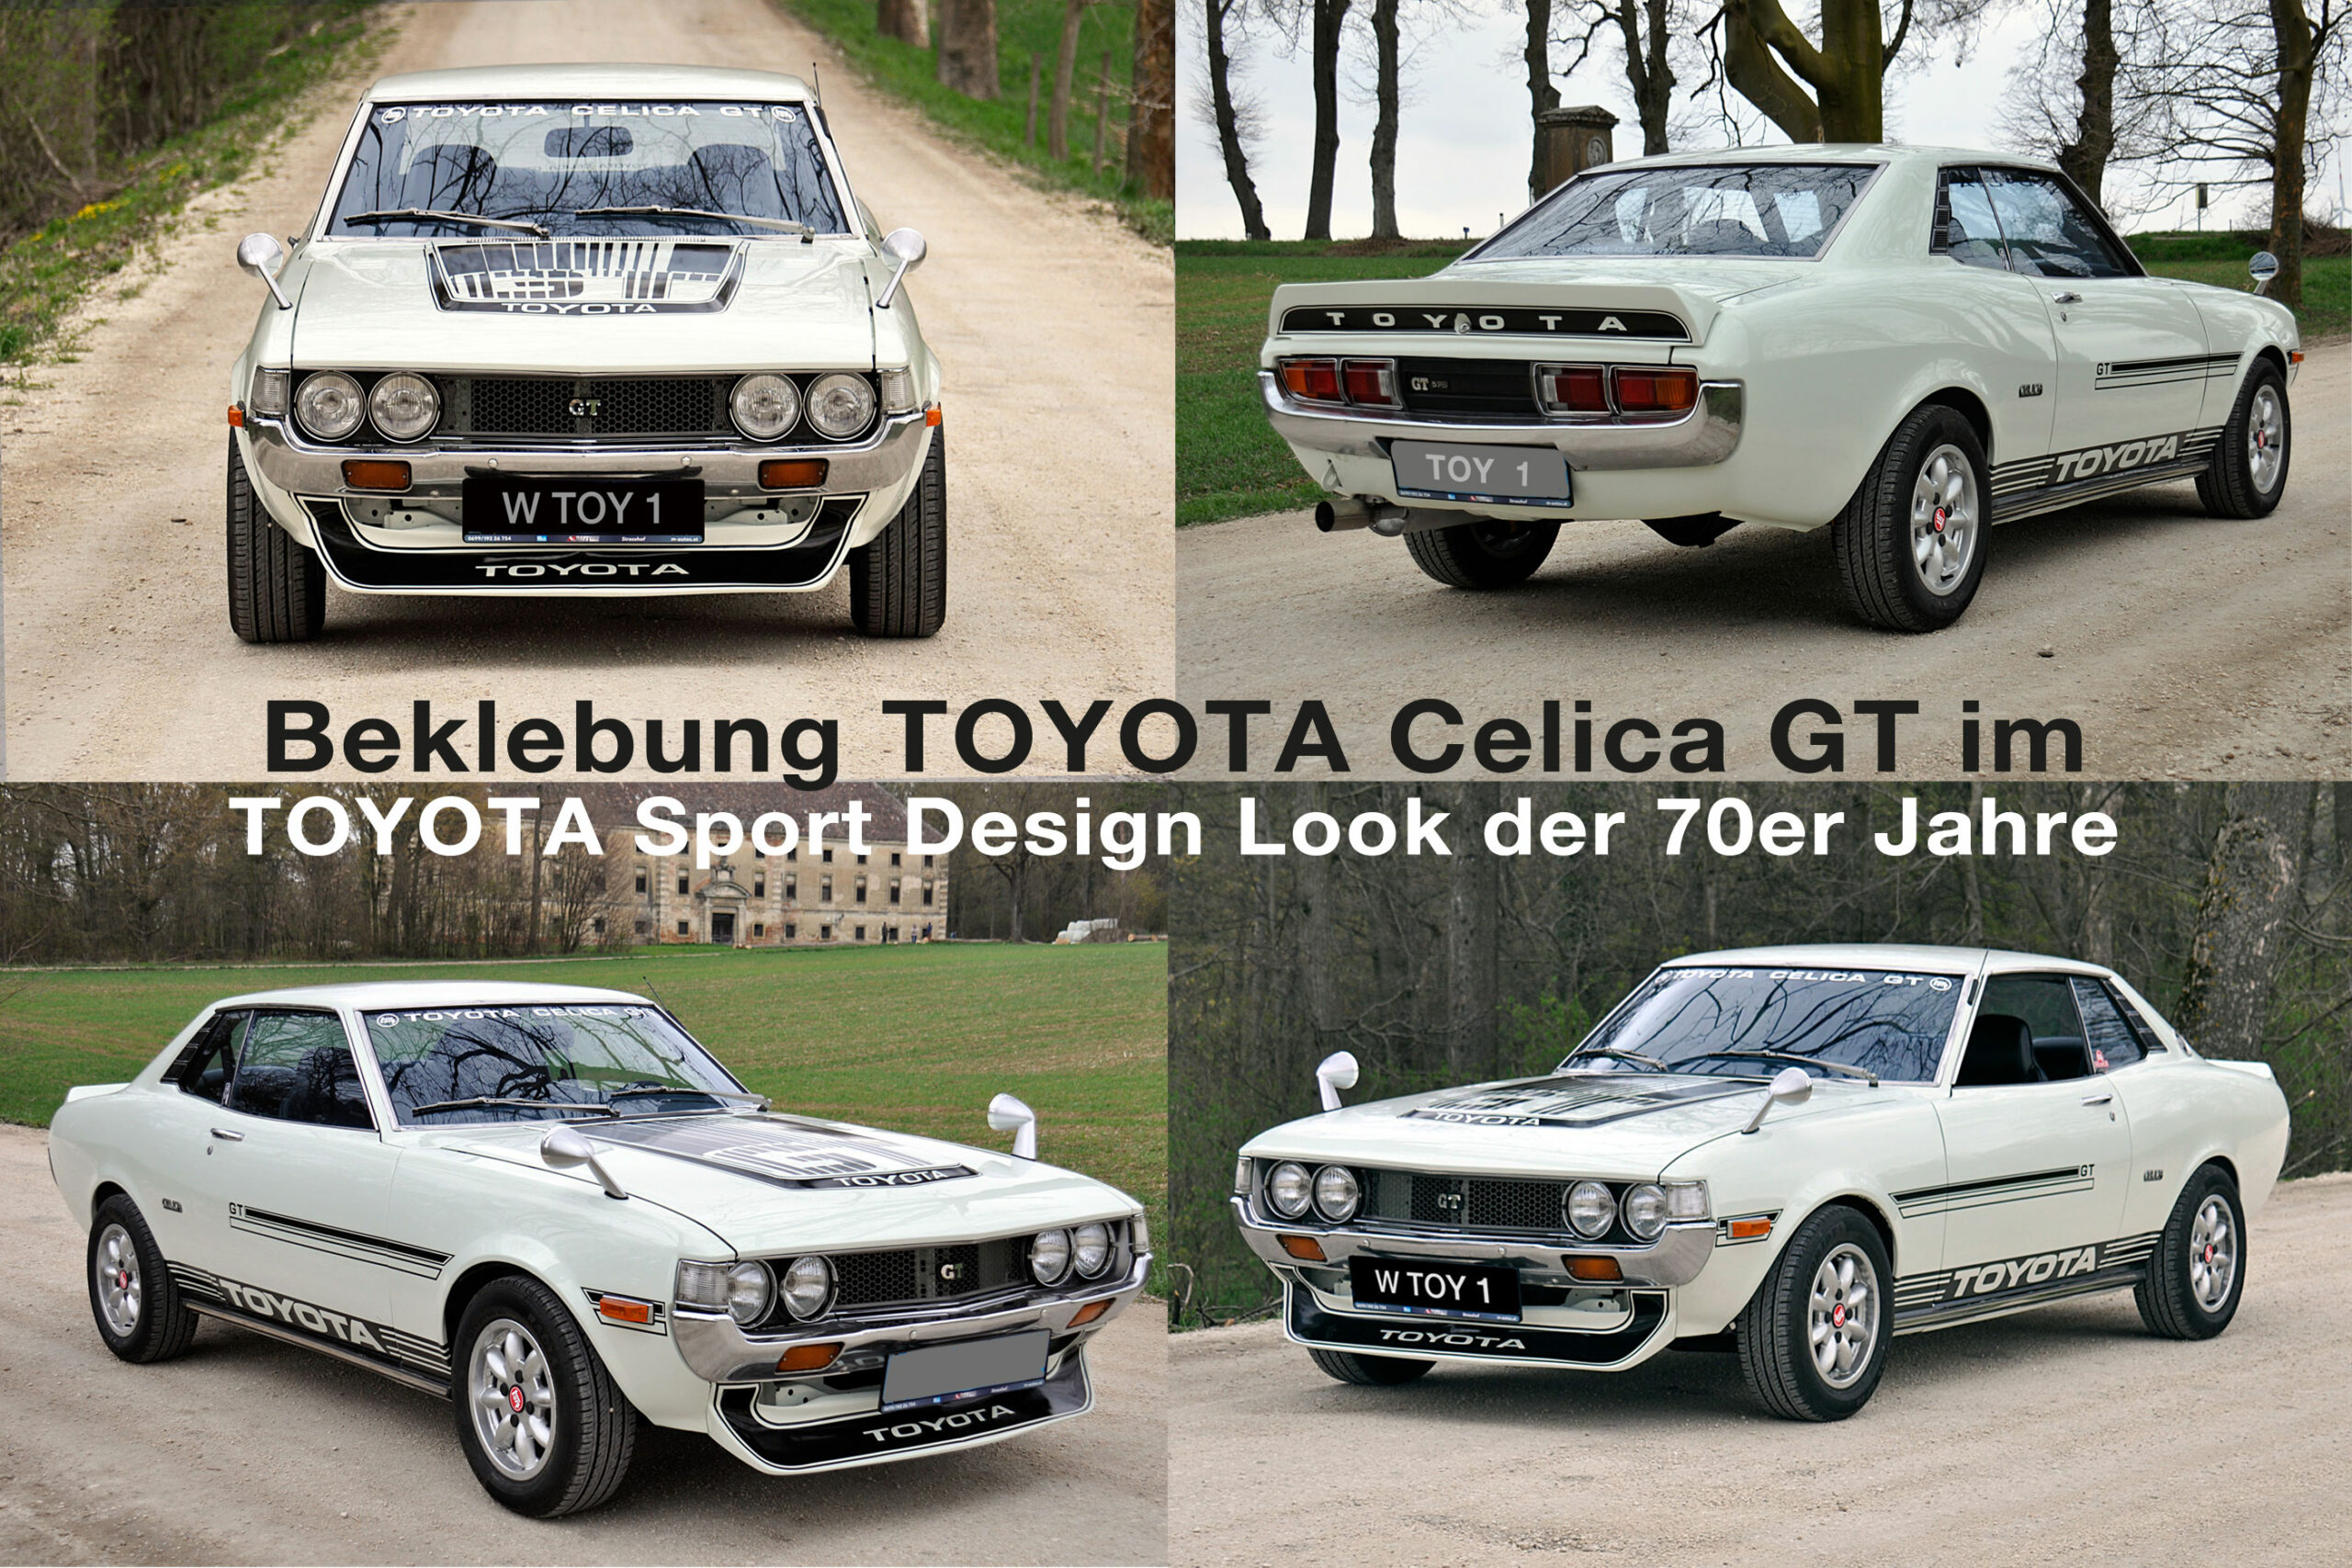 Toyota Celica GT im Sport Desgin Look der 70er Jahre